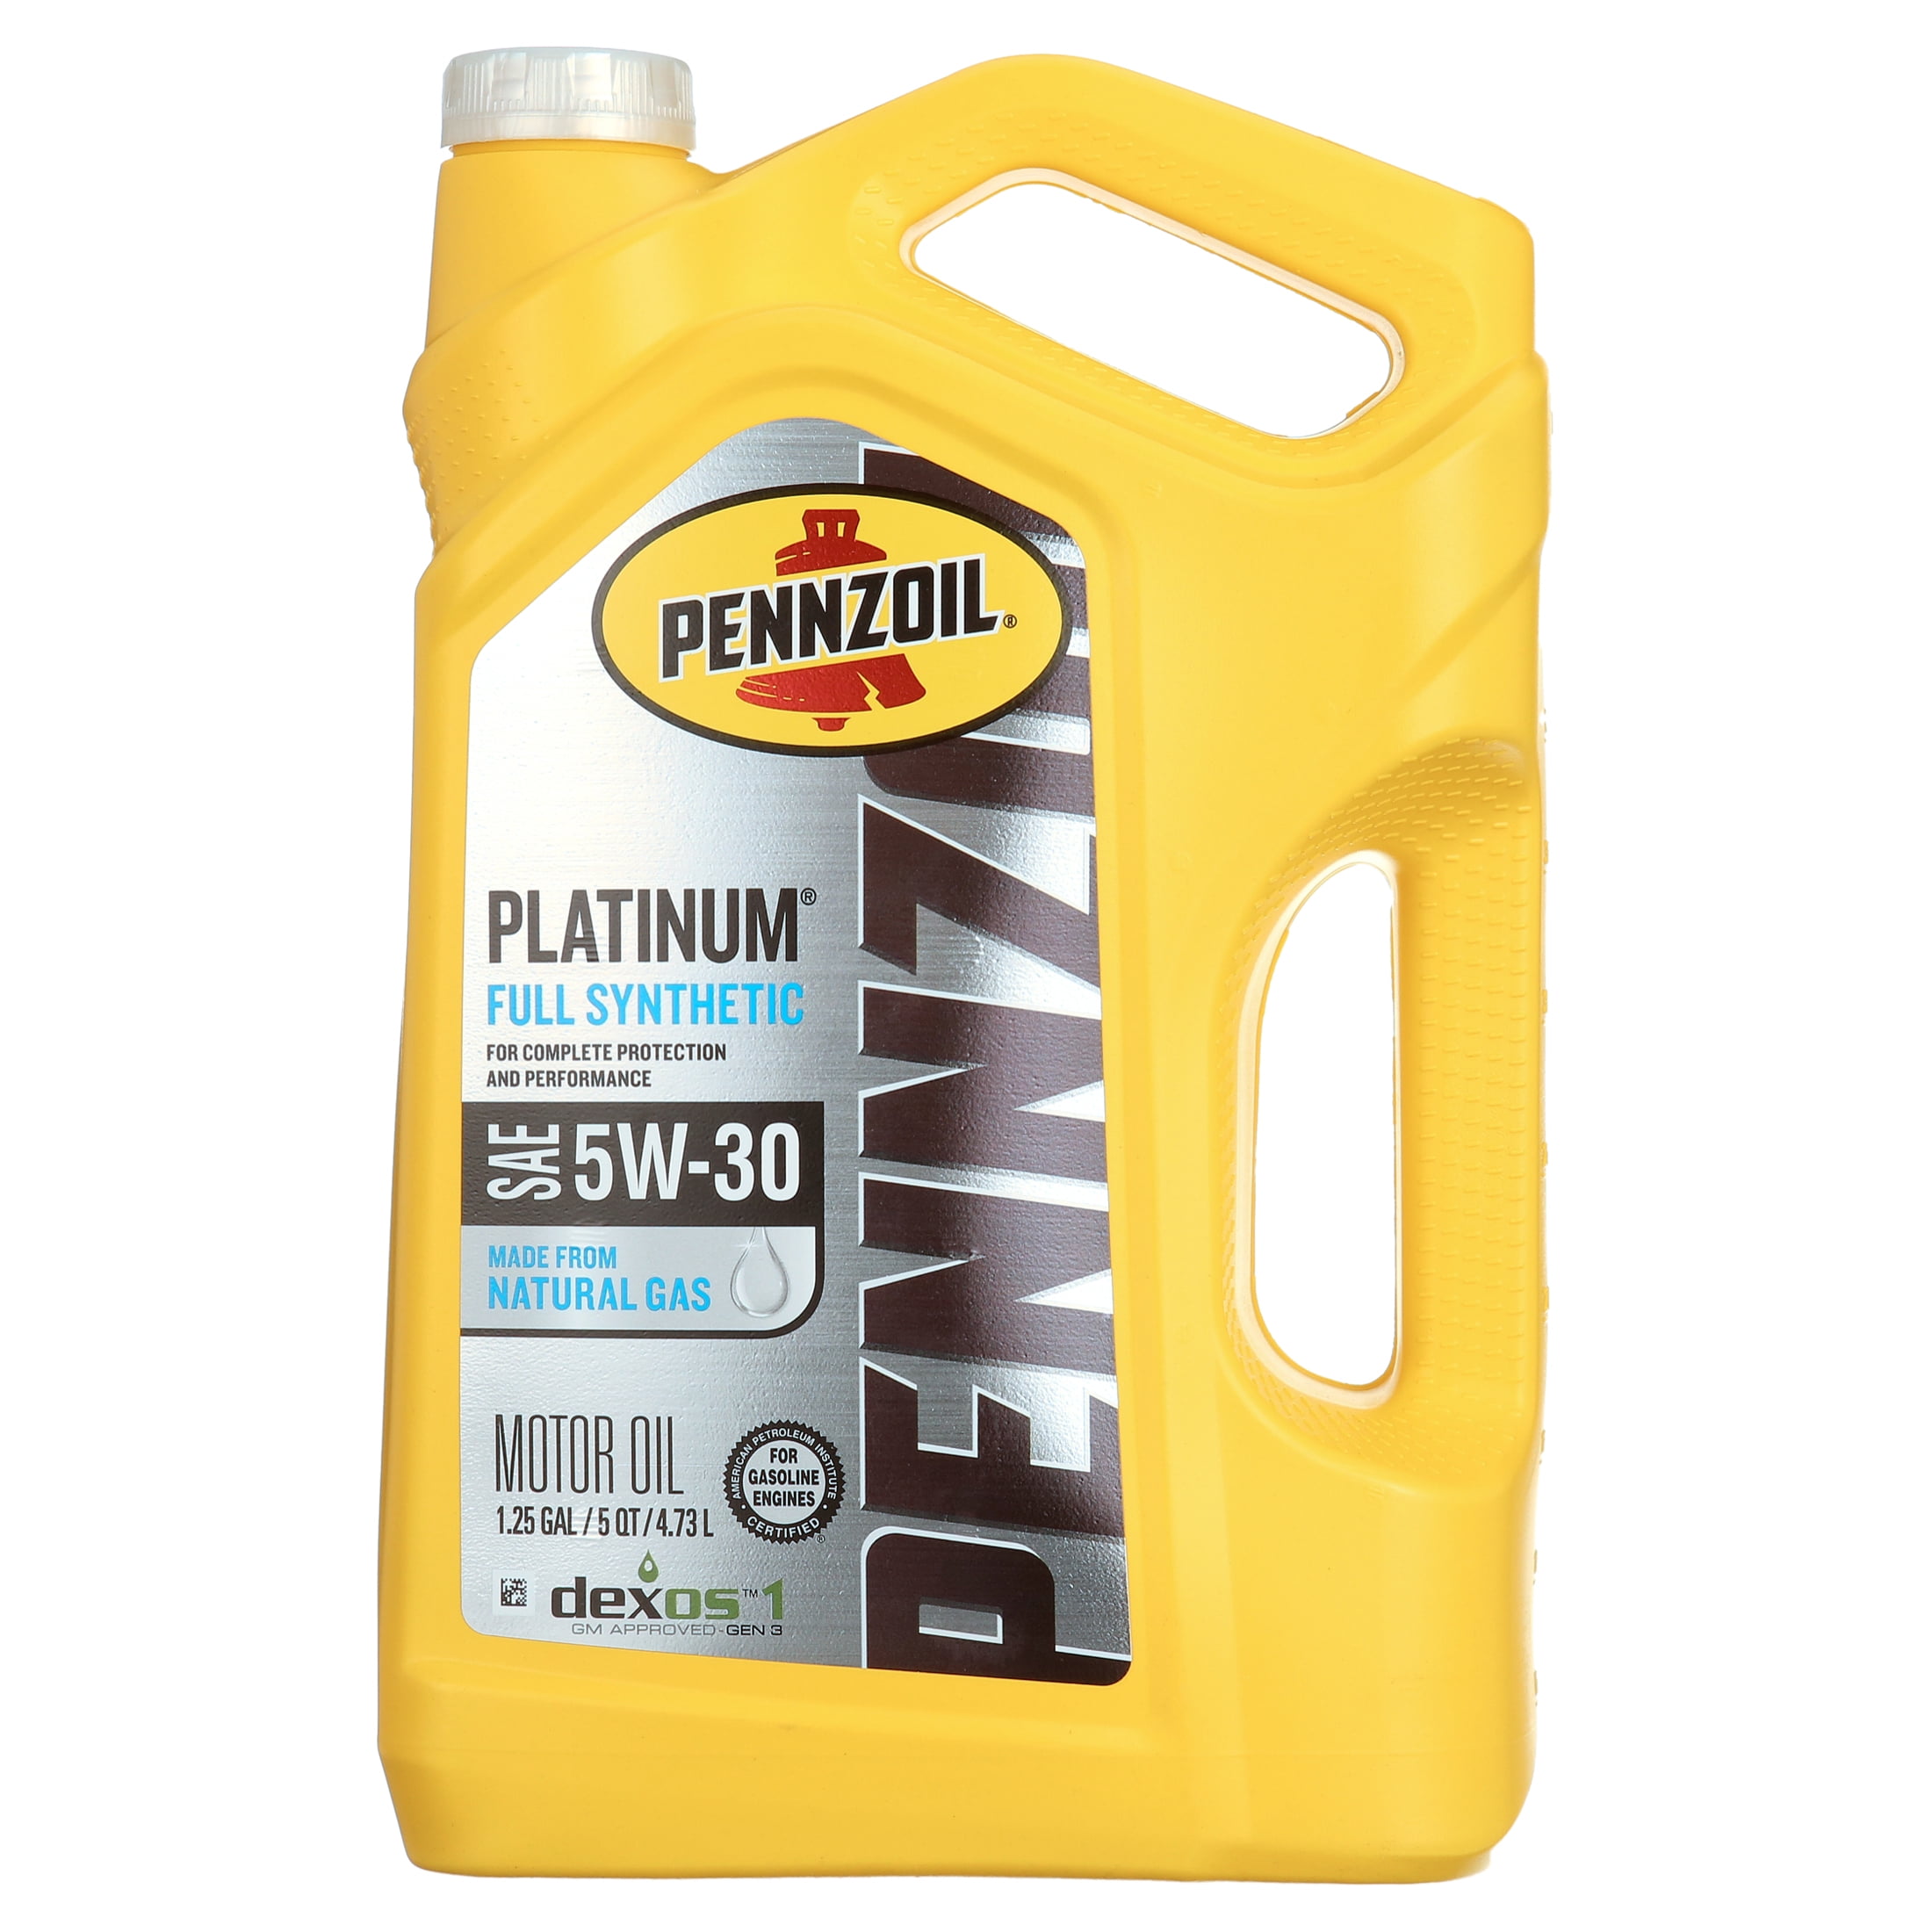 Pennzoil Platinum Full Synthetic 5W-30 Motor Oil, 5-Quart 